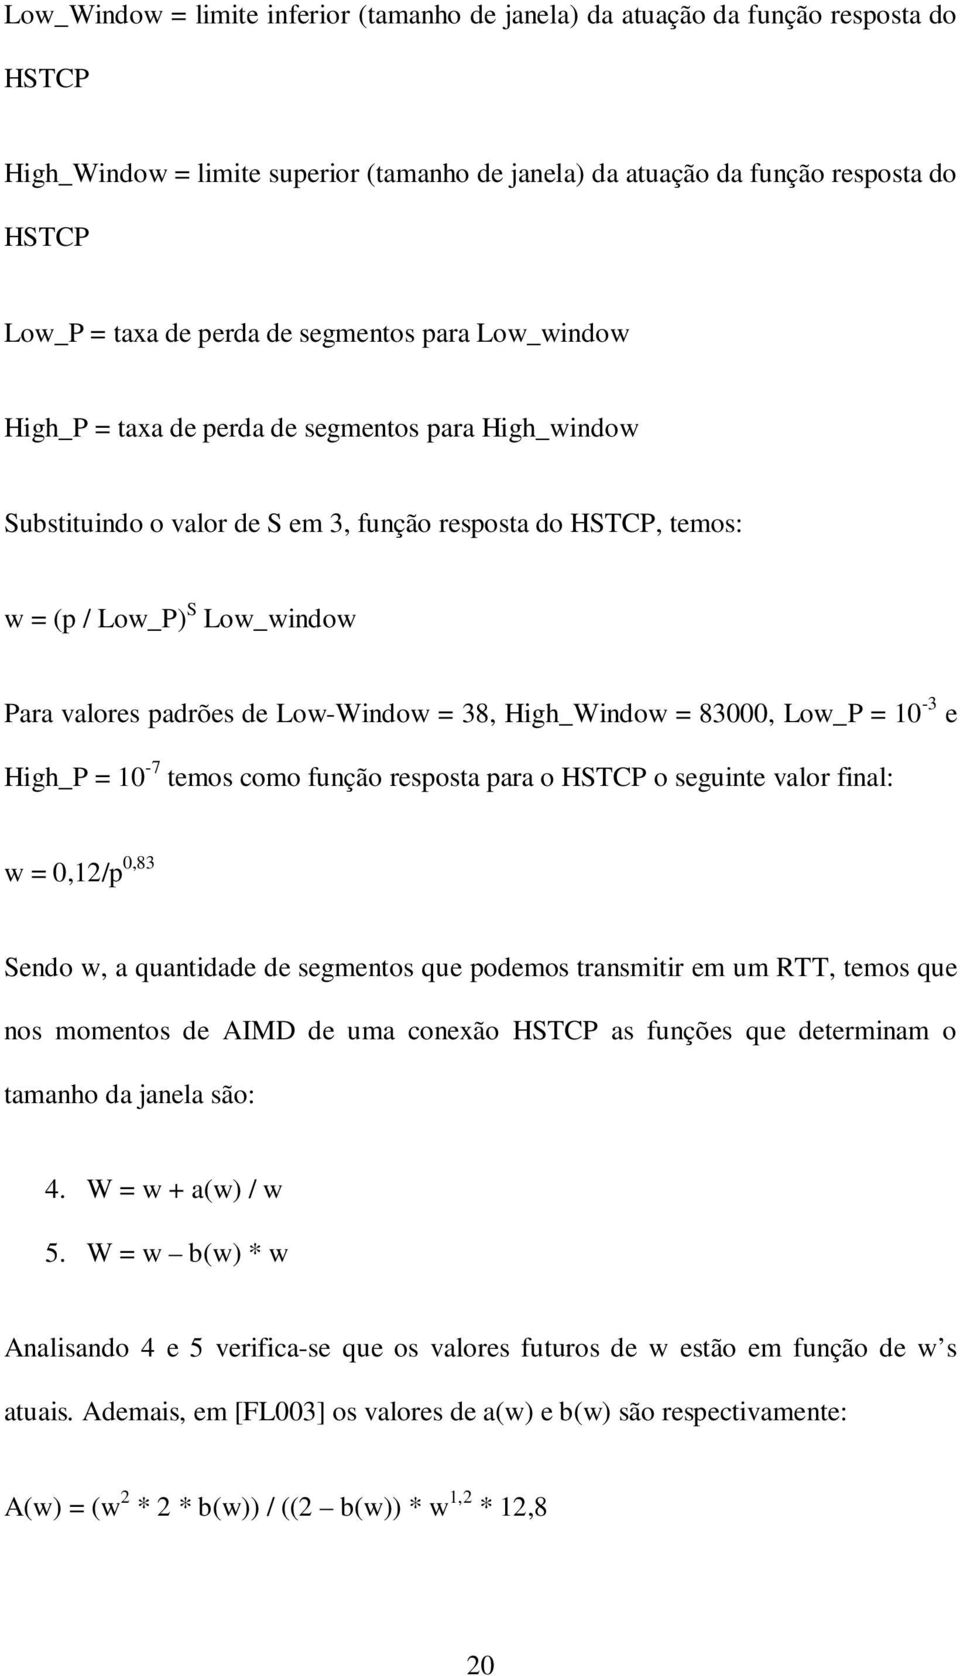 Low-Window = 38, High_Window = 83000, Low_P = 10-3 e High_P = 10-7 temos como função resposta para o HSTCP o seguinte valor final: w = 0,12/p 0,83 Sendo w, a quantidade de segmentos que podemos